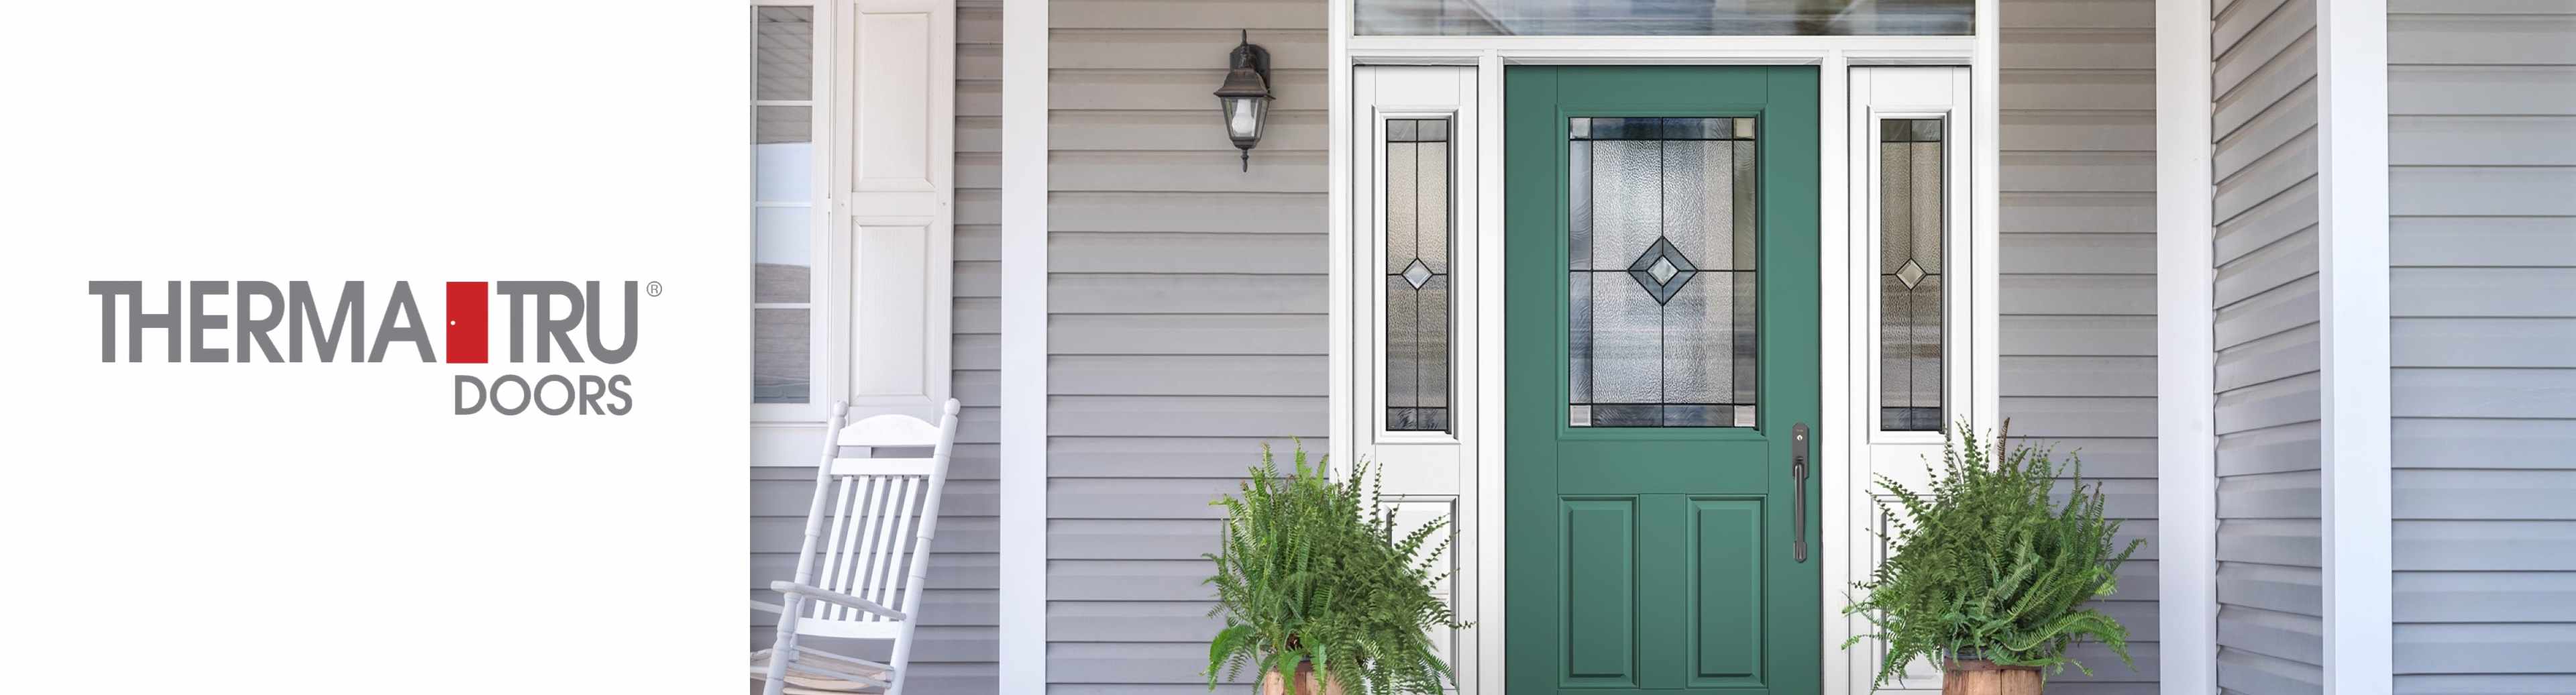 Therma Tru Doors logo with front door of house